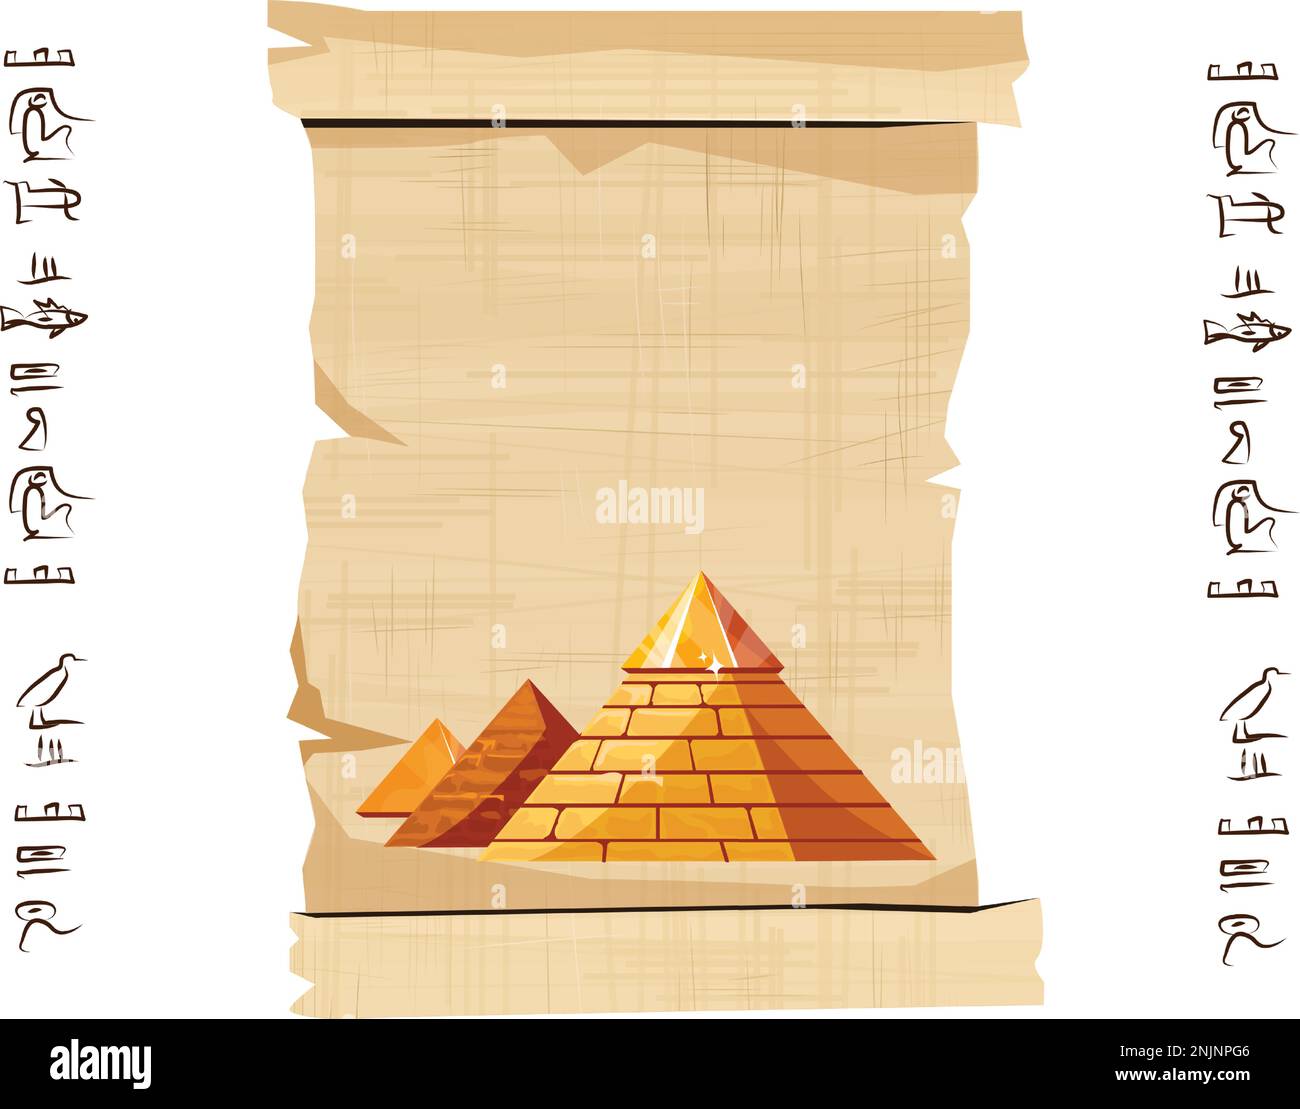 Alte ägyptische Papyrus-Schriftrolle mit Pyramiden-Silhouetten-Cartoon-Vektordarstellung. Antikes Papier mit Hieroglyphen, Informationen, ägyptische Kultur, religiöse Symbole, isoliert auf weißem Hintergrund Stock Vektor